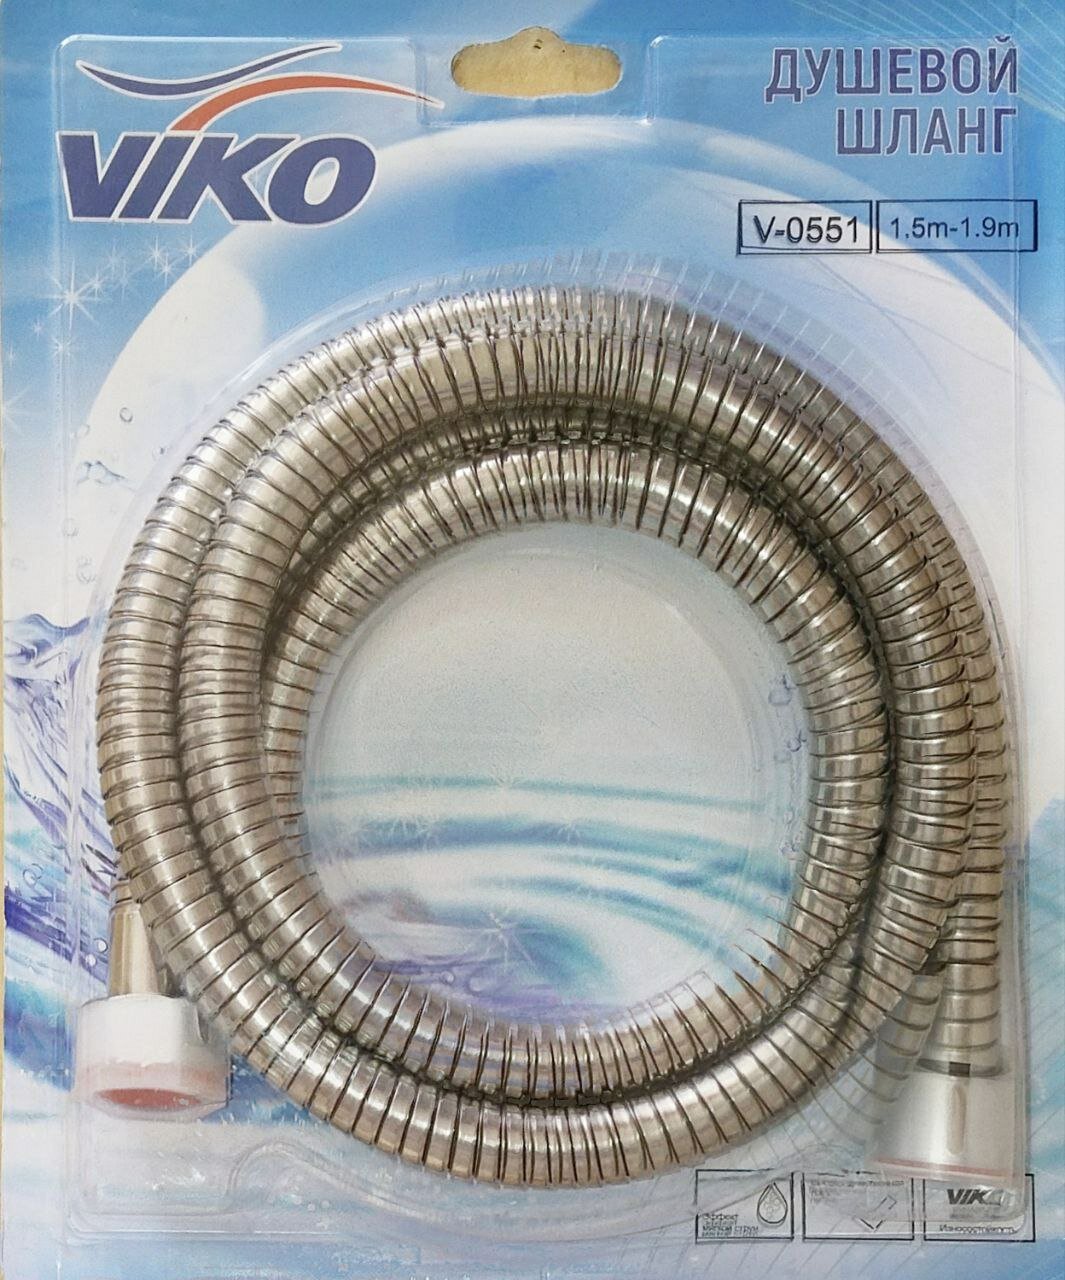 Шланг для душа VIKO 1,5-1,9м V-0551